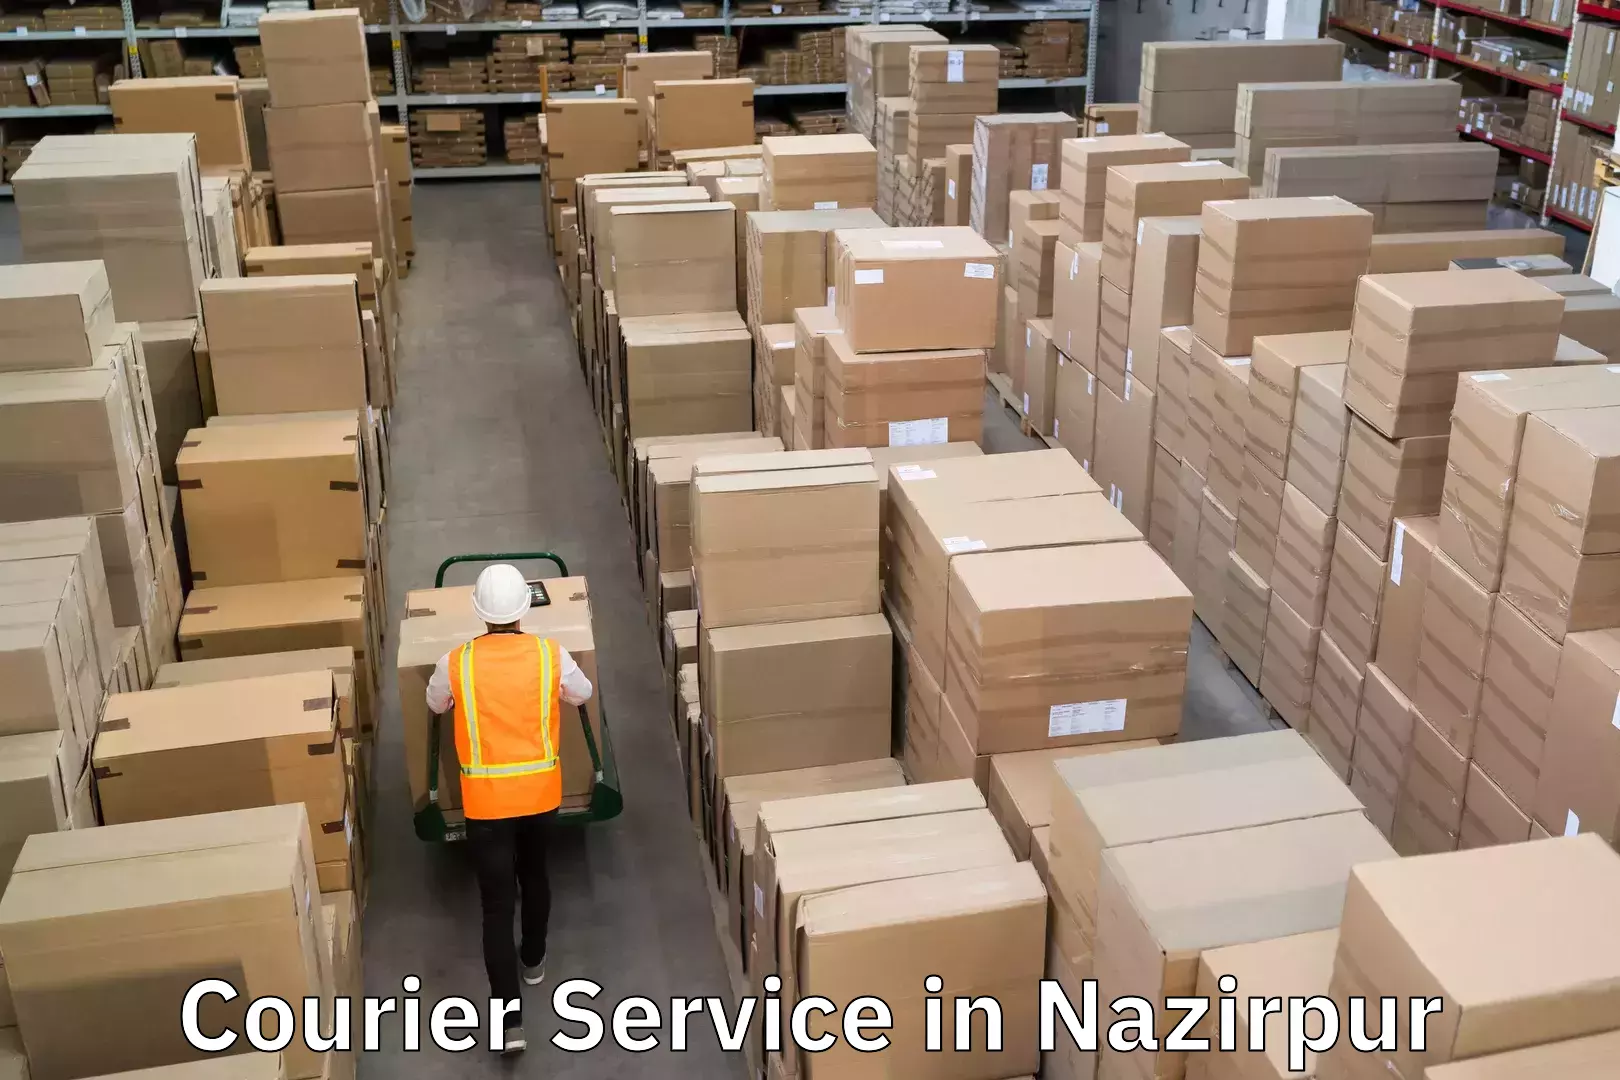 Efficient cargo handling in Nazirpur